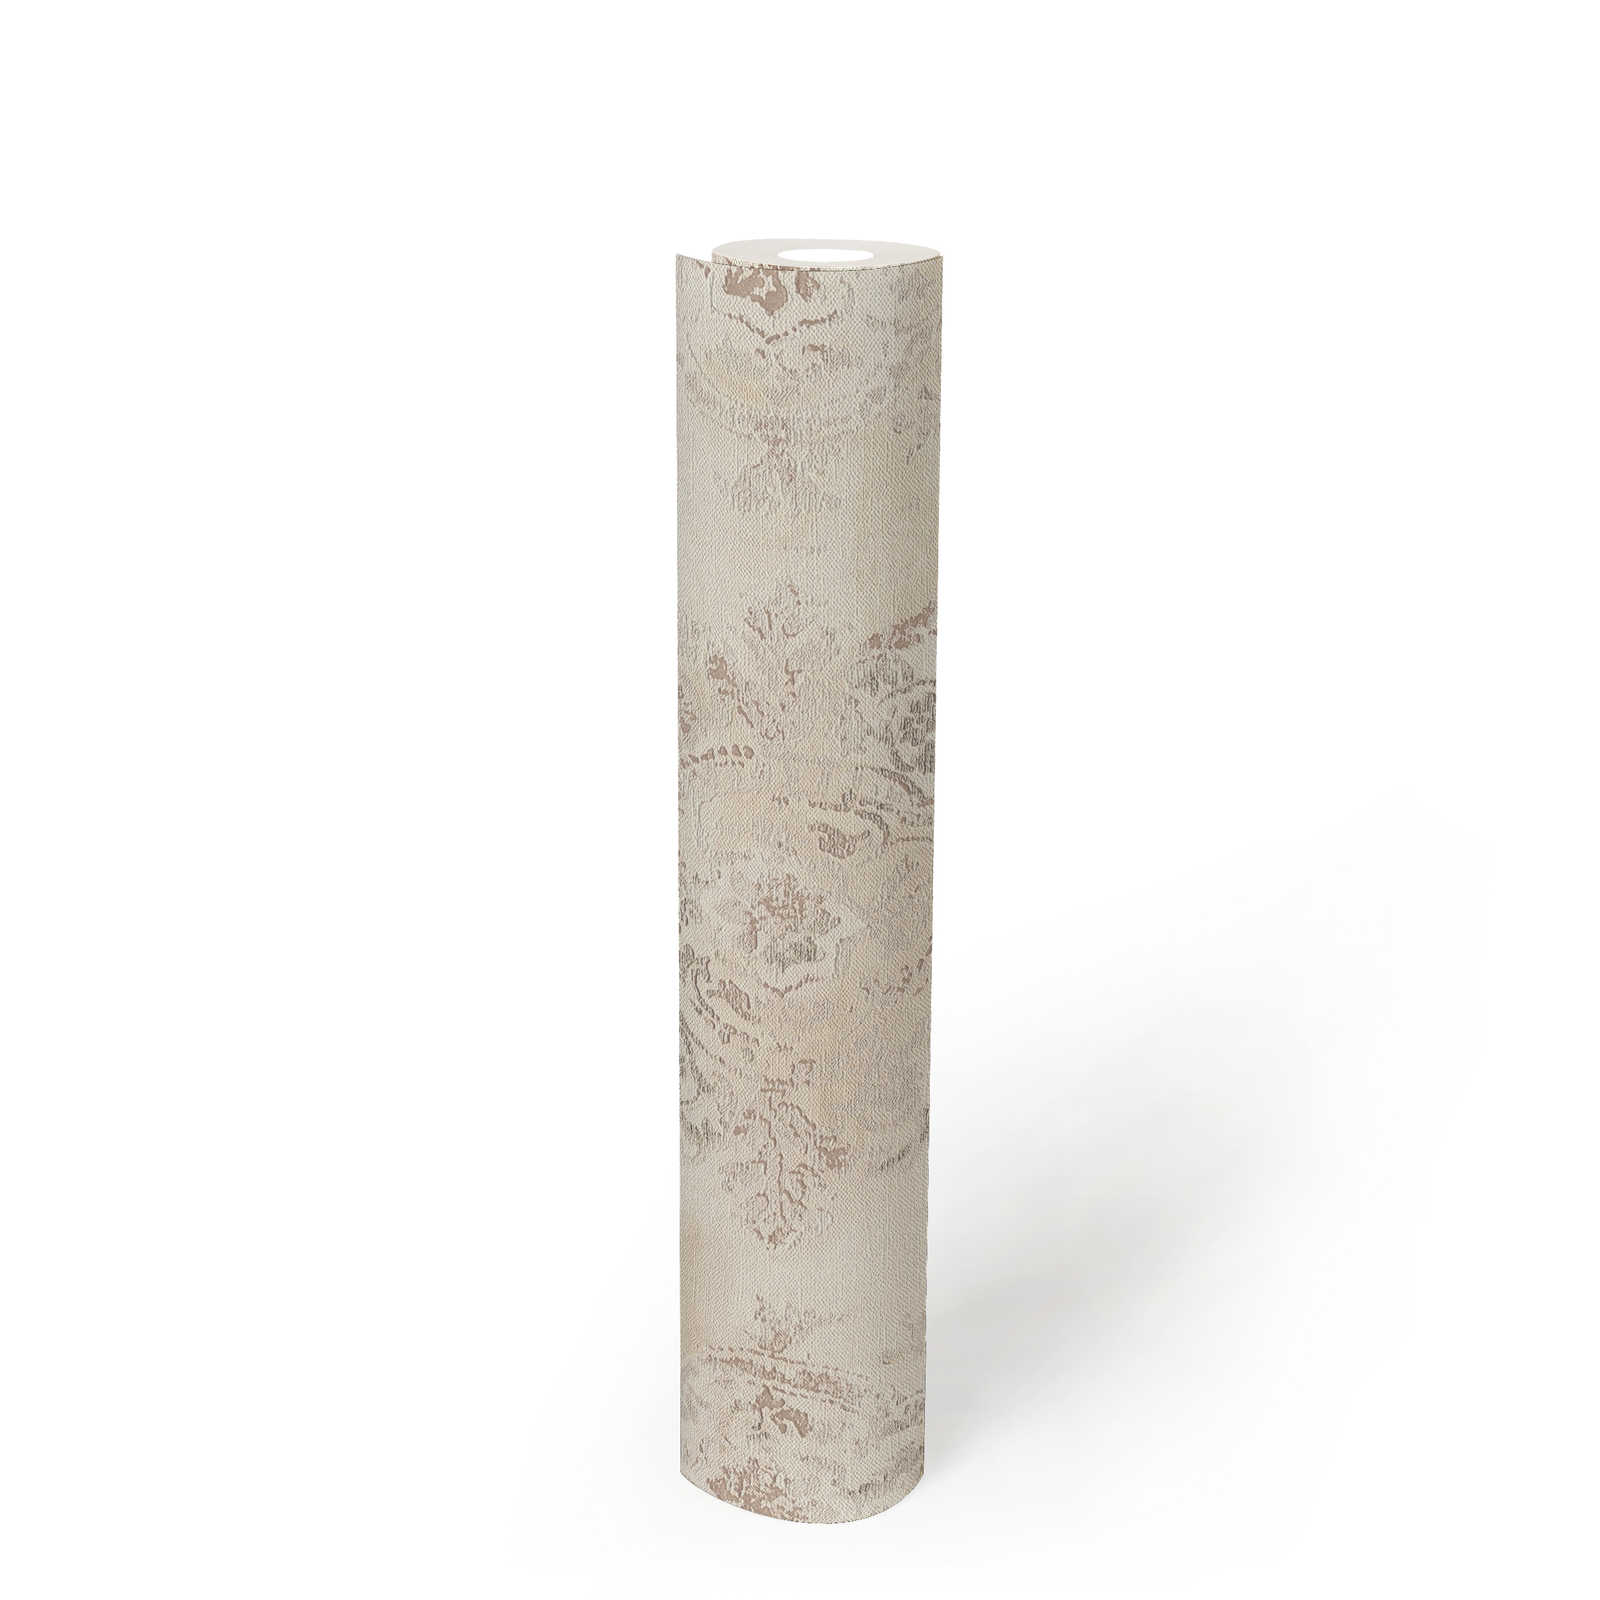             Papel pintado de aspecto textil con motivos ornamentales en aspecto usado - metálico, crema, beige
        